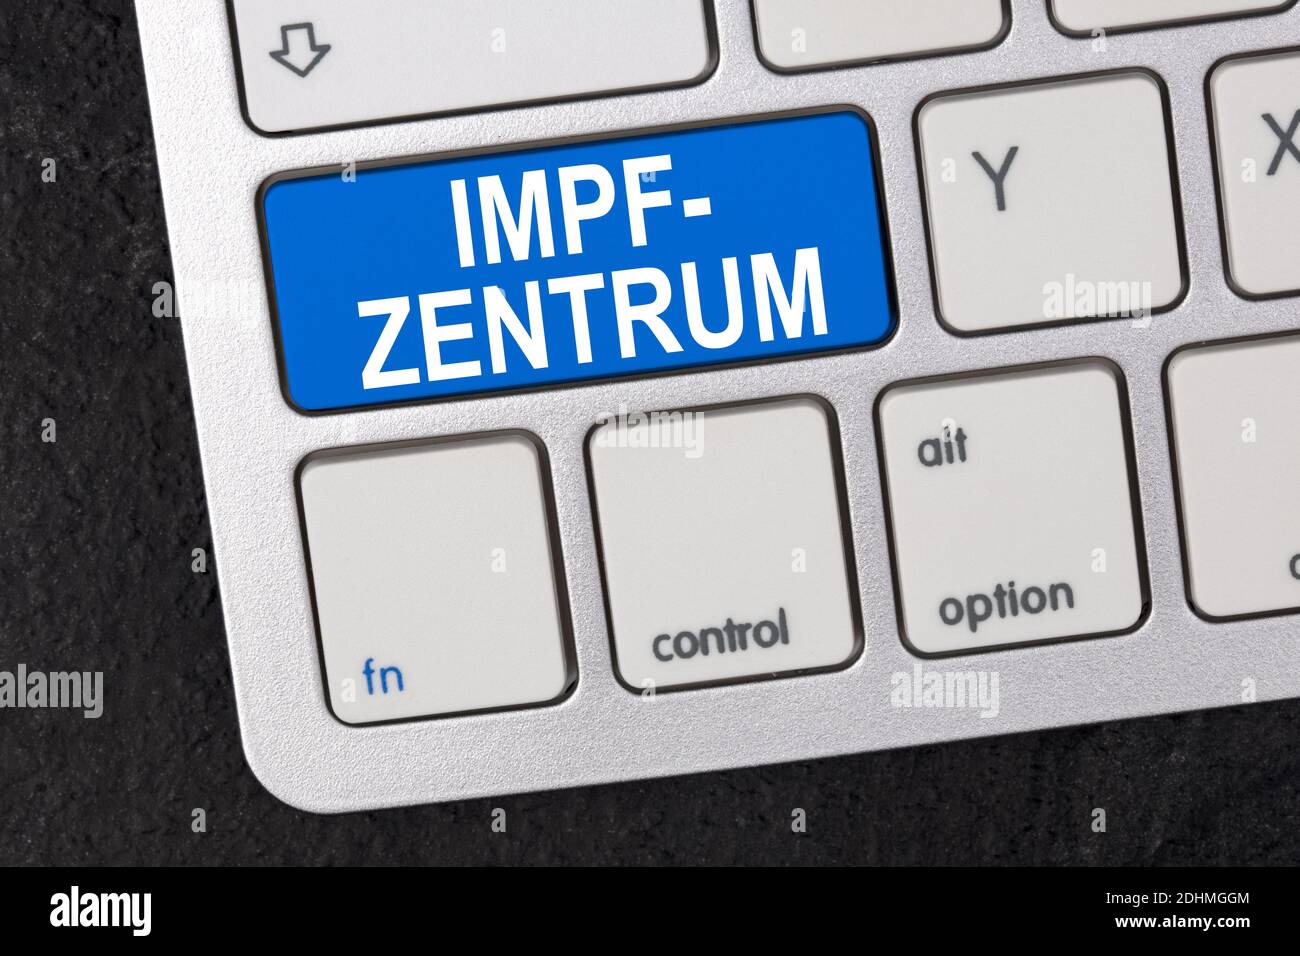 Concepto: Impfzentrum en alemán significa - centro de vacunación en un teclado sobre fondo oscuro Foto de stock